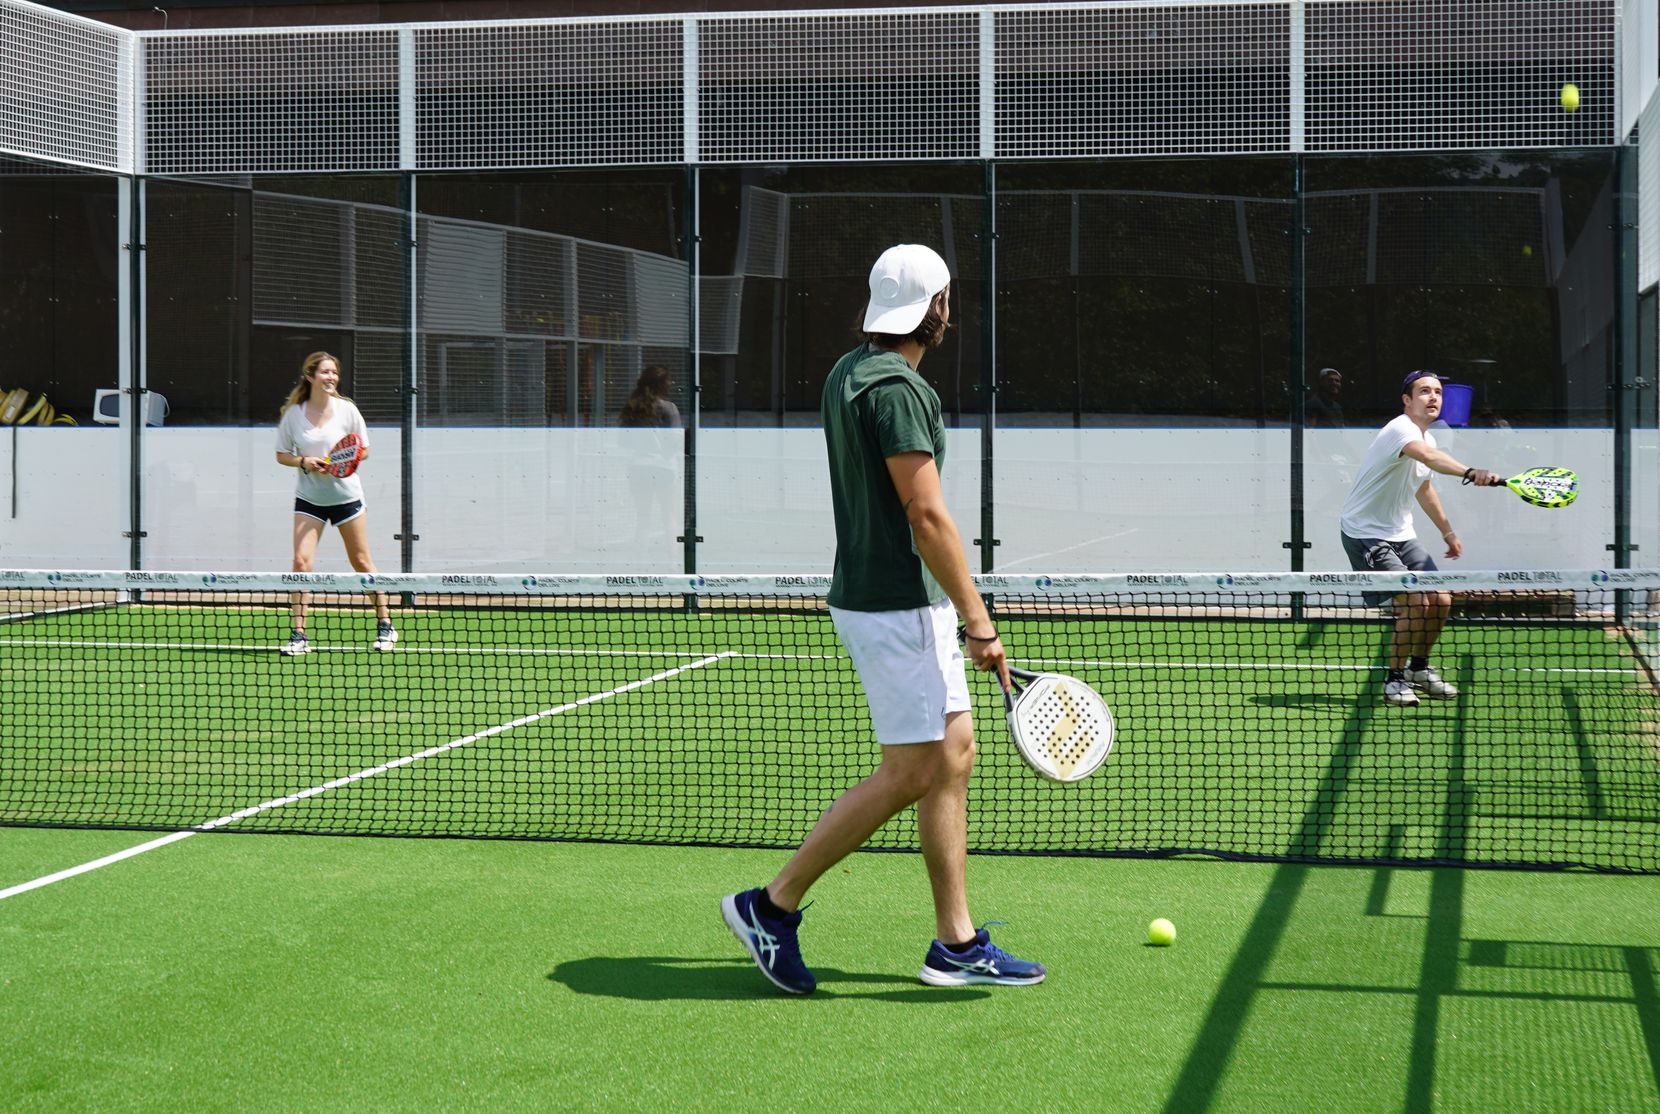 Zwei Männer und eine Frau spielen eine Art Tennis auf einem Feld. 